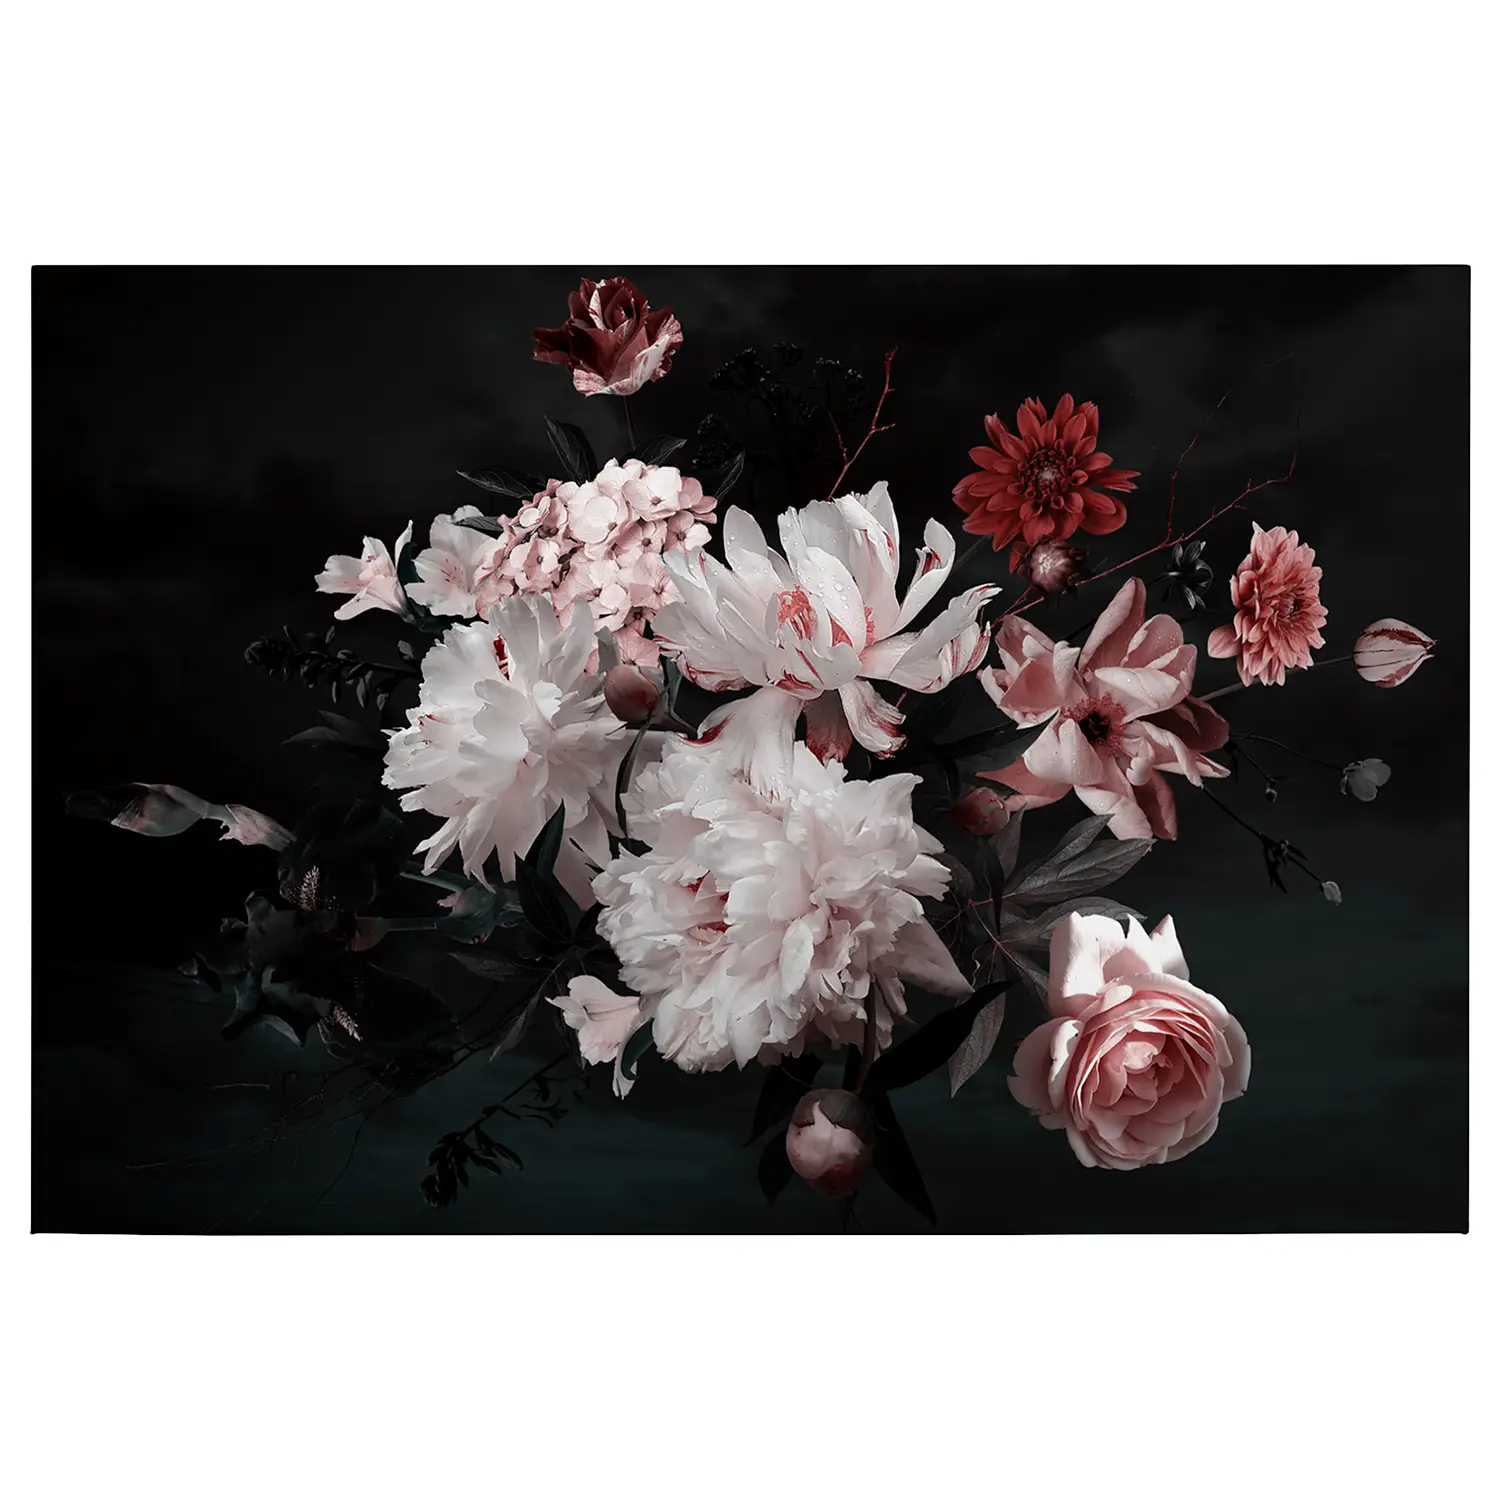 Wandbild Blunch Of Flowers | Bilder